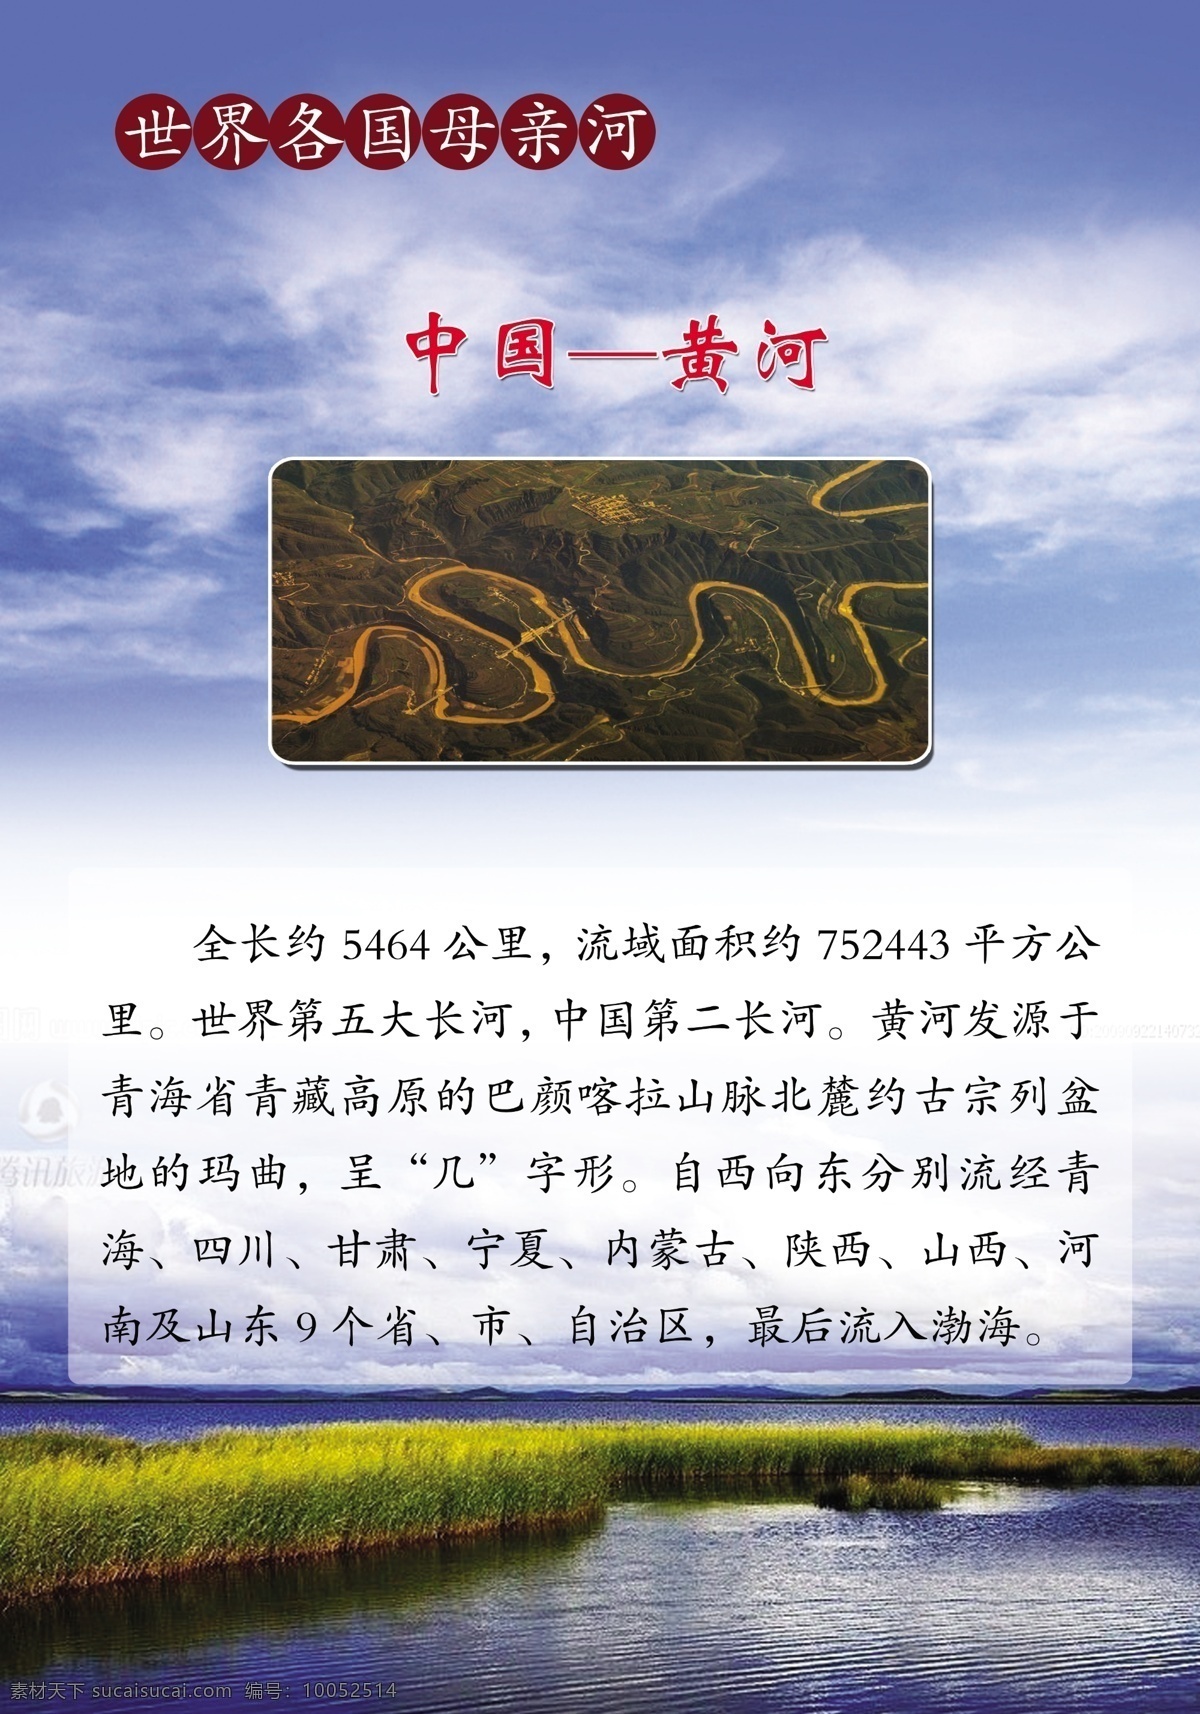 世界各国 母亲河 中国 黄河 中国黄河 全长 约 公里 世界 五大 长河 中国第二长河 白色